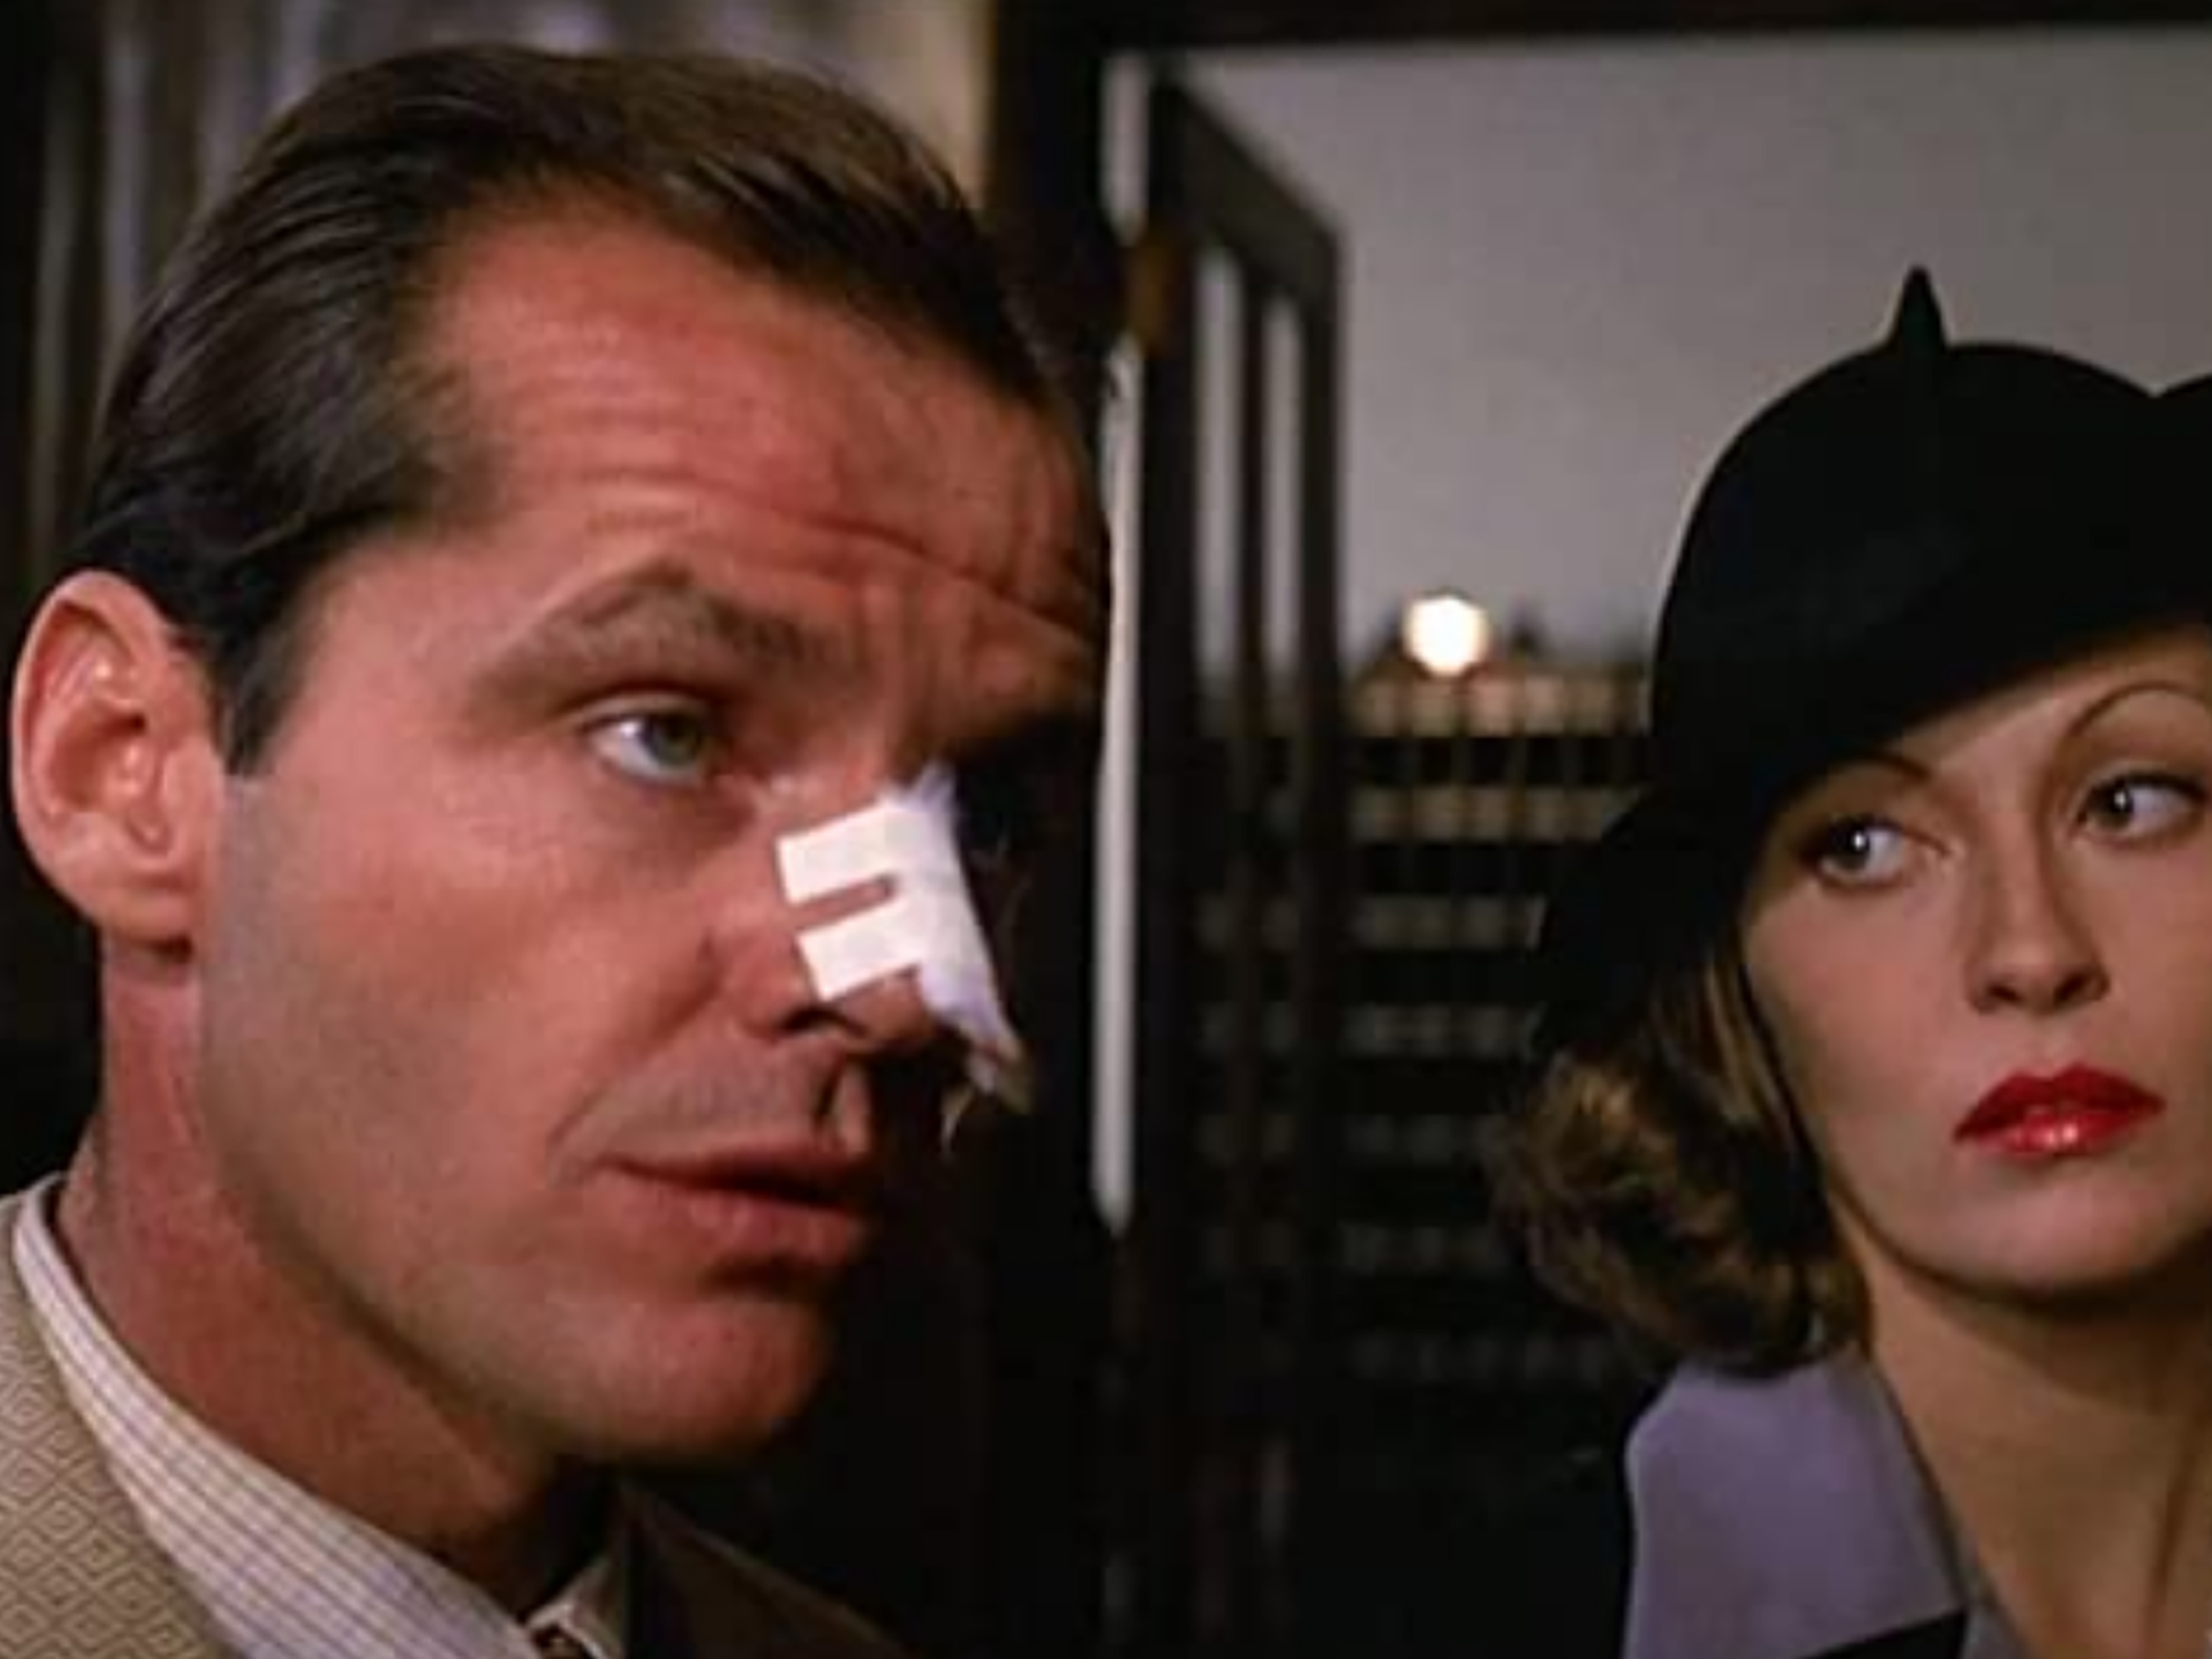 Jack Nicholson and Faye Dunaway in “Chinatown” (1974)